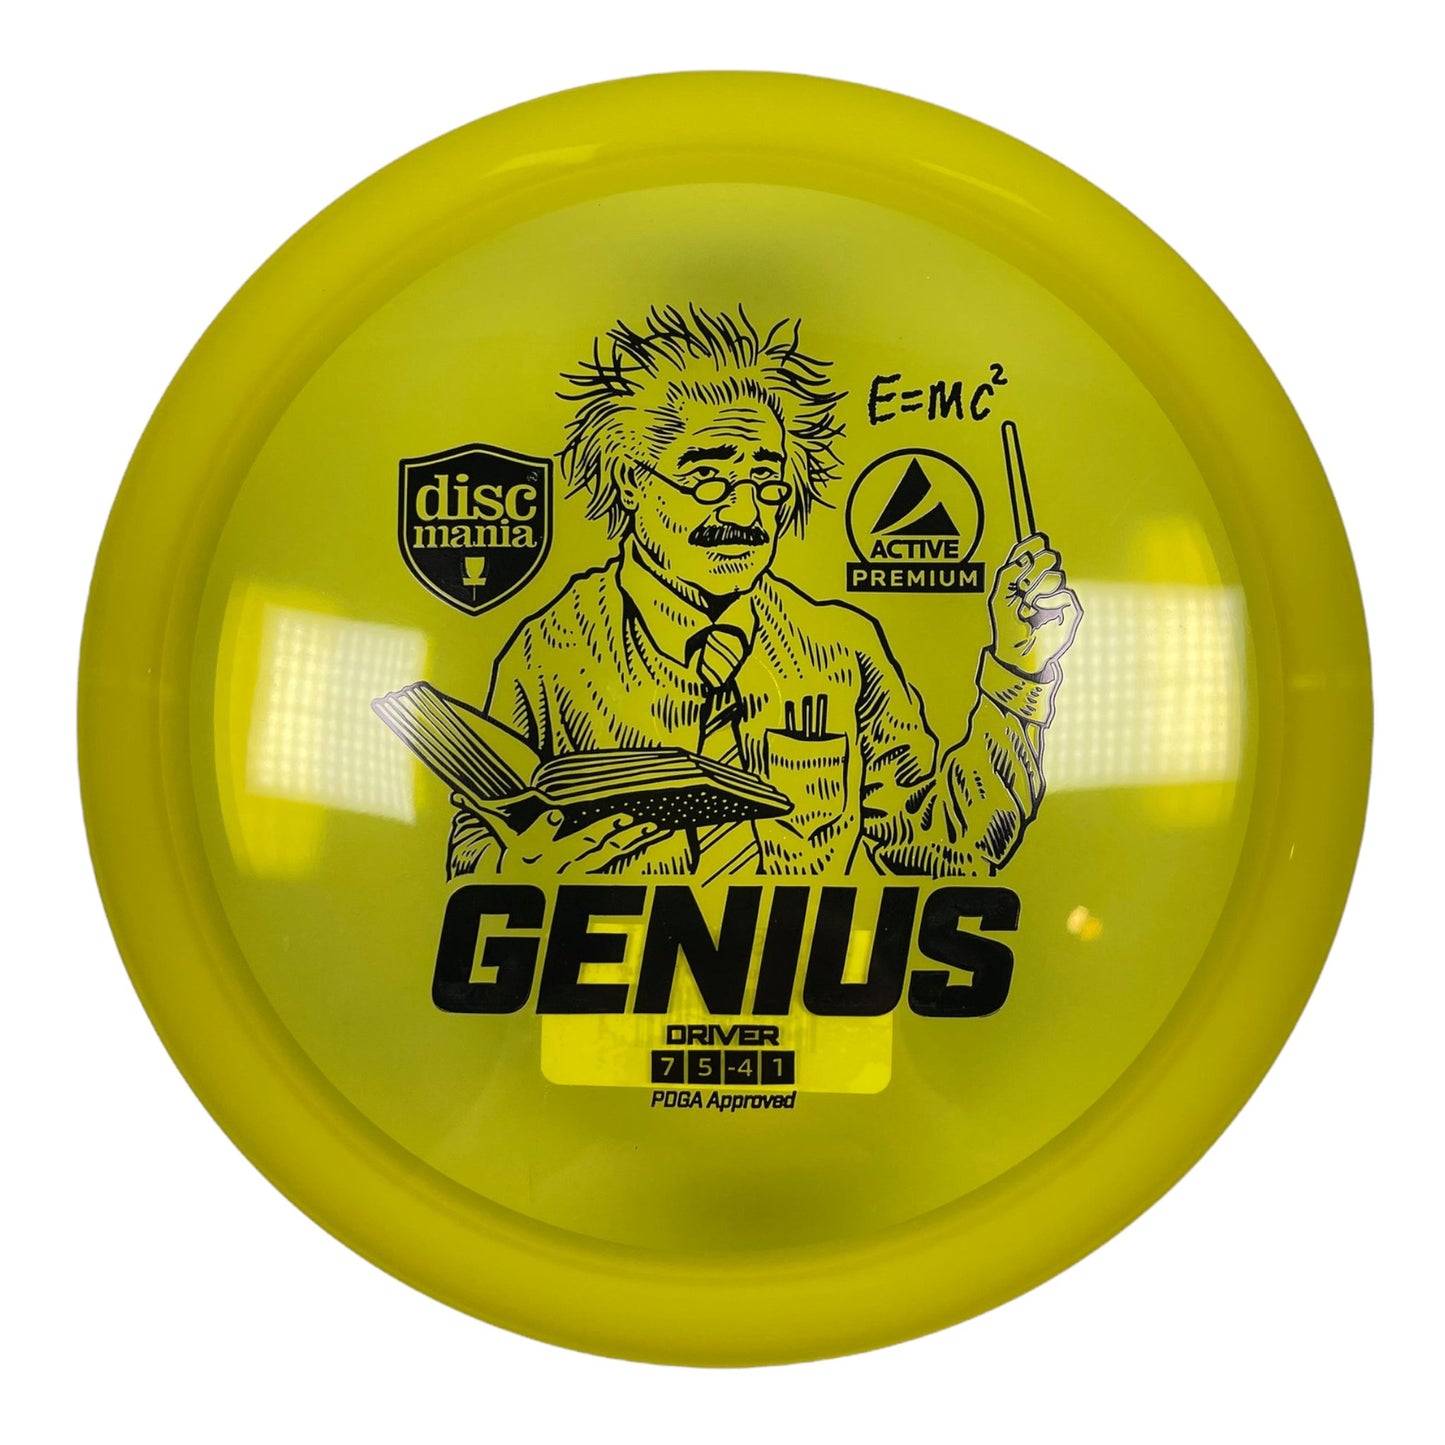 Discmania Genius | Active Premium | Yellow/Black 172-173g Disc Golf